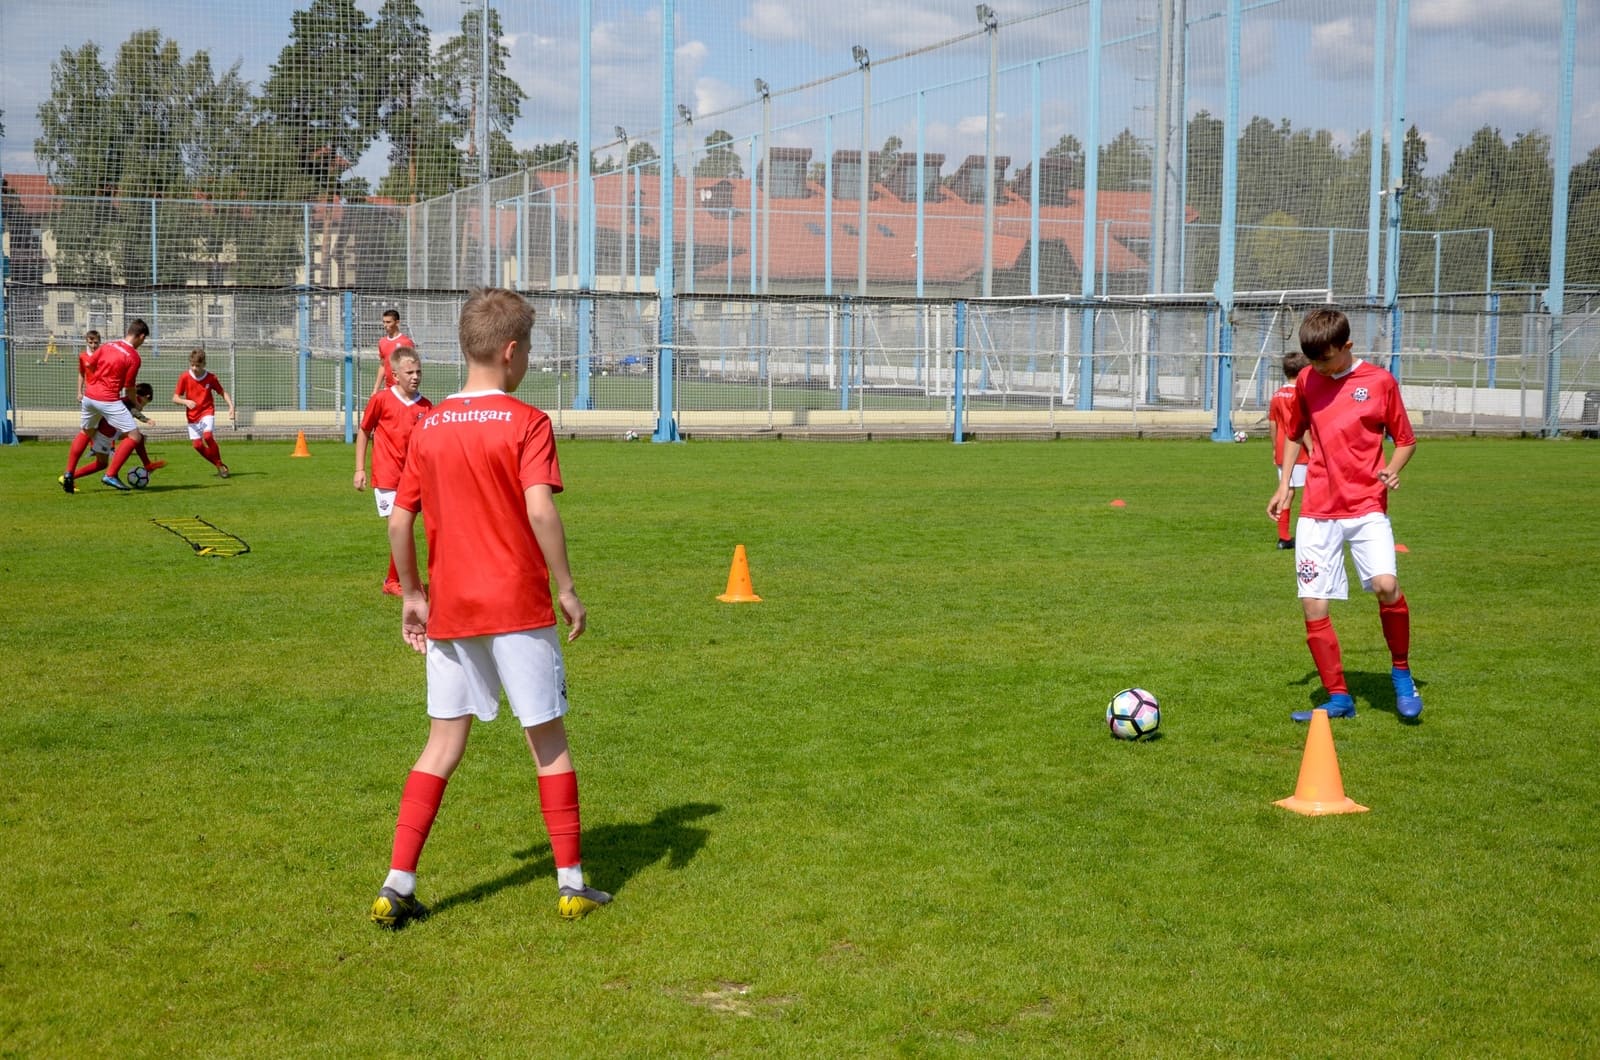 «FC Stuttgart. Premium Кратово» – спортивный лагерь, Московская область, Раменский район. Путевки в детский лагерь на 2023 год, фото 11